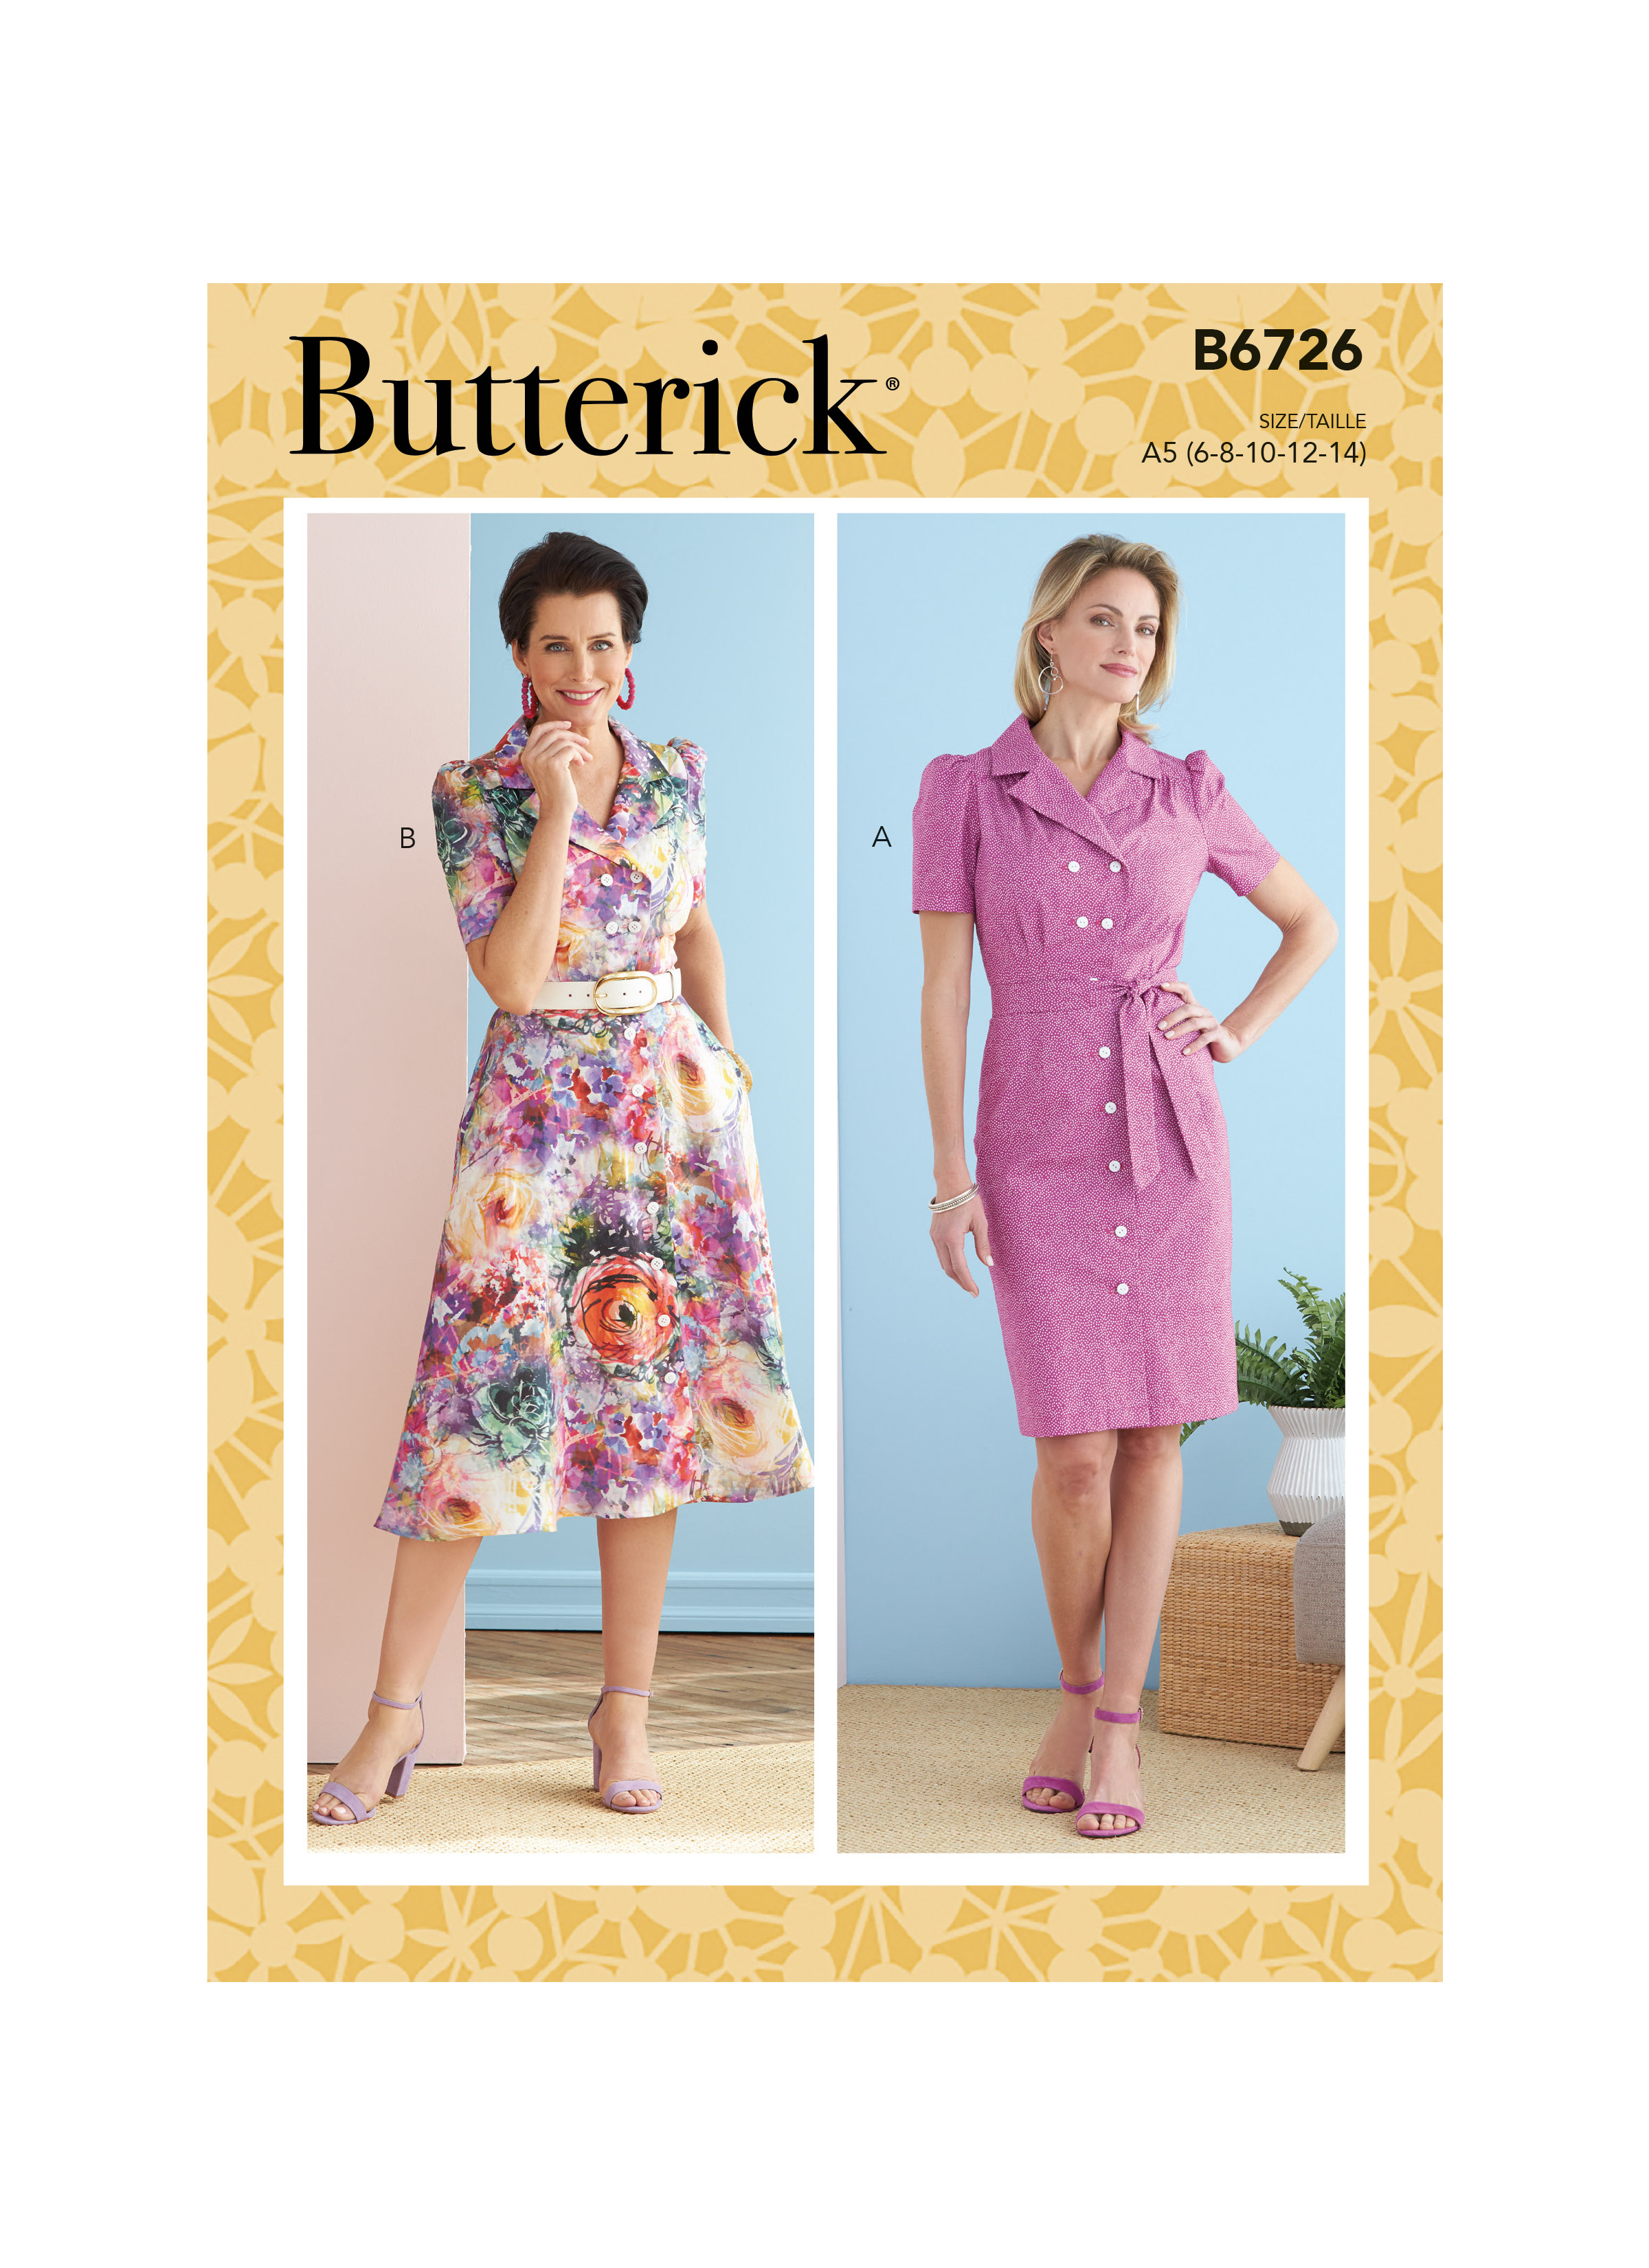 Butterick 6726 Misses Dresses